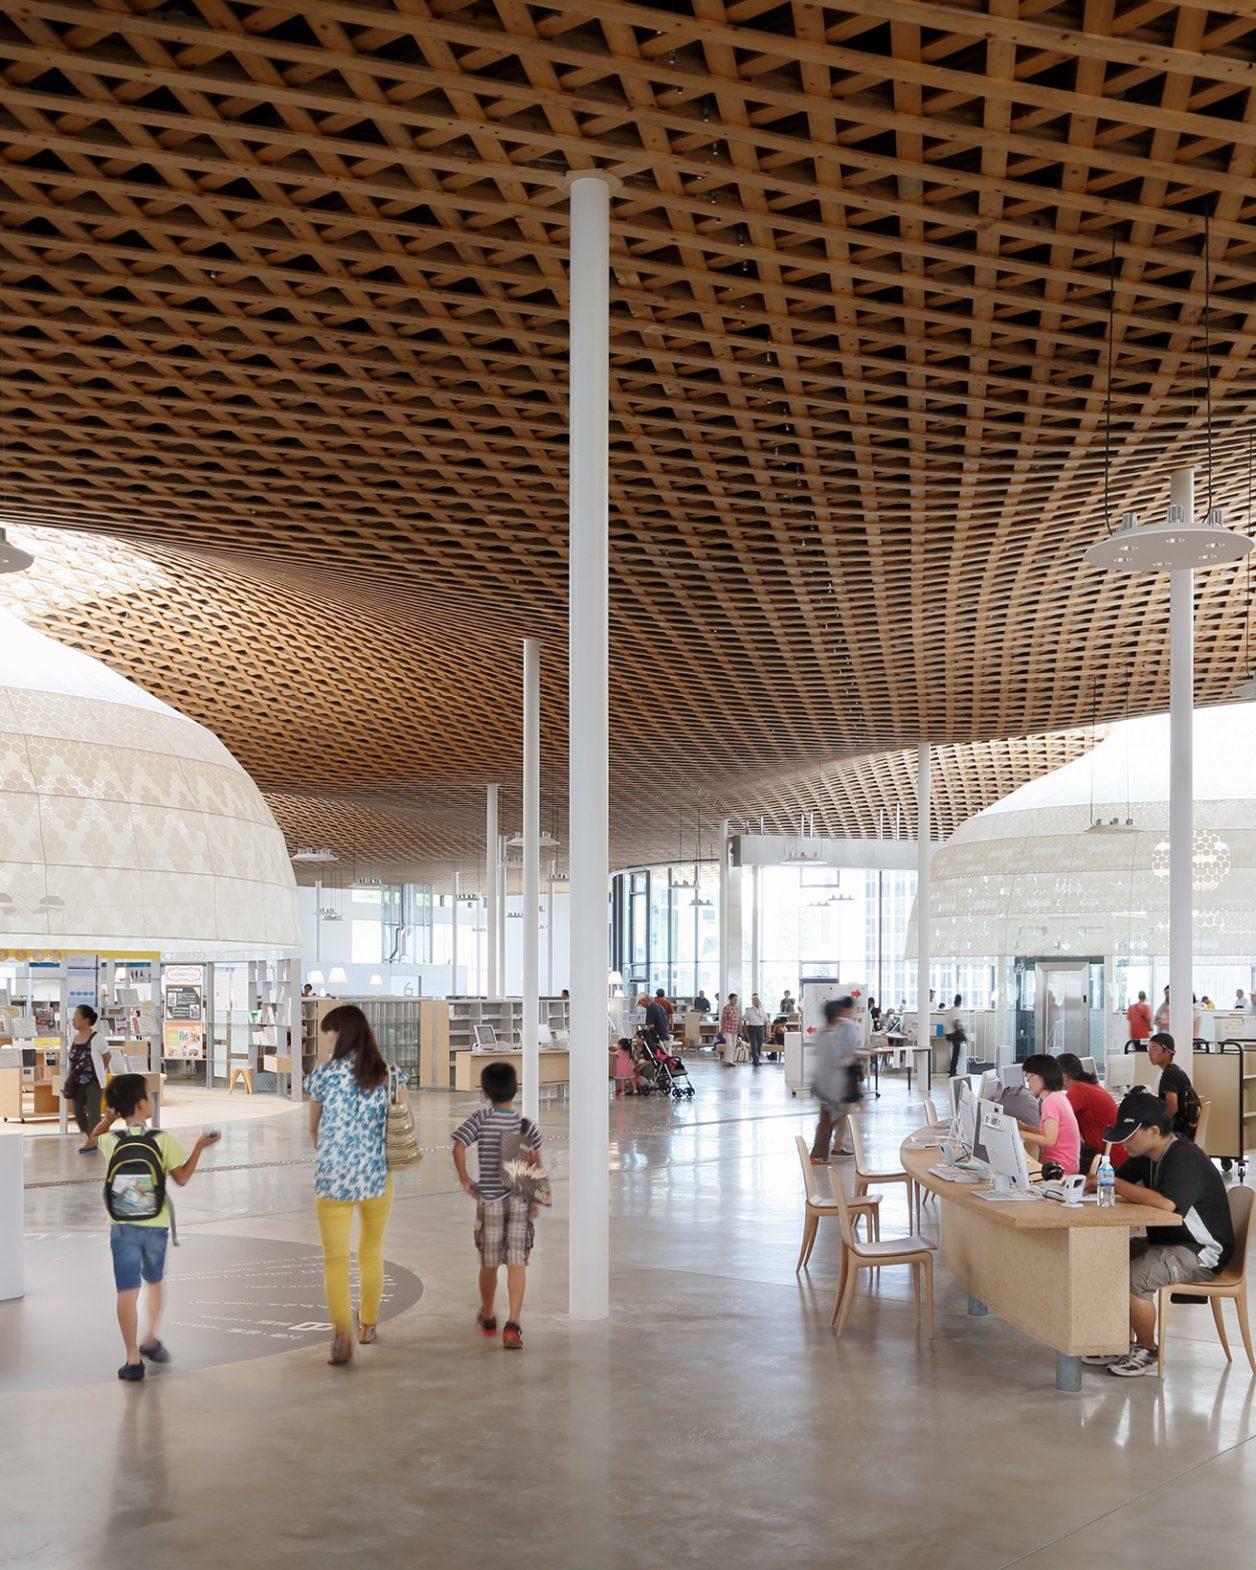 伊東豊雄の5つの公共建築を巡る展覧会が、自身の最新建築で開催。